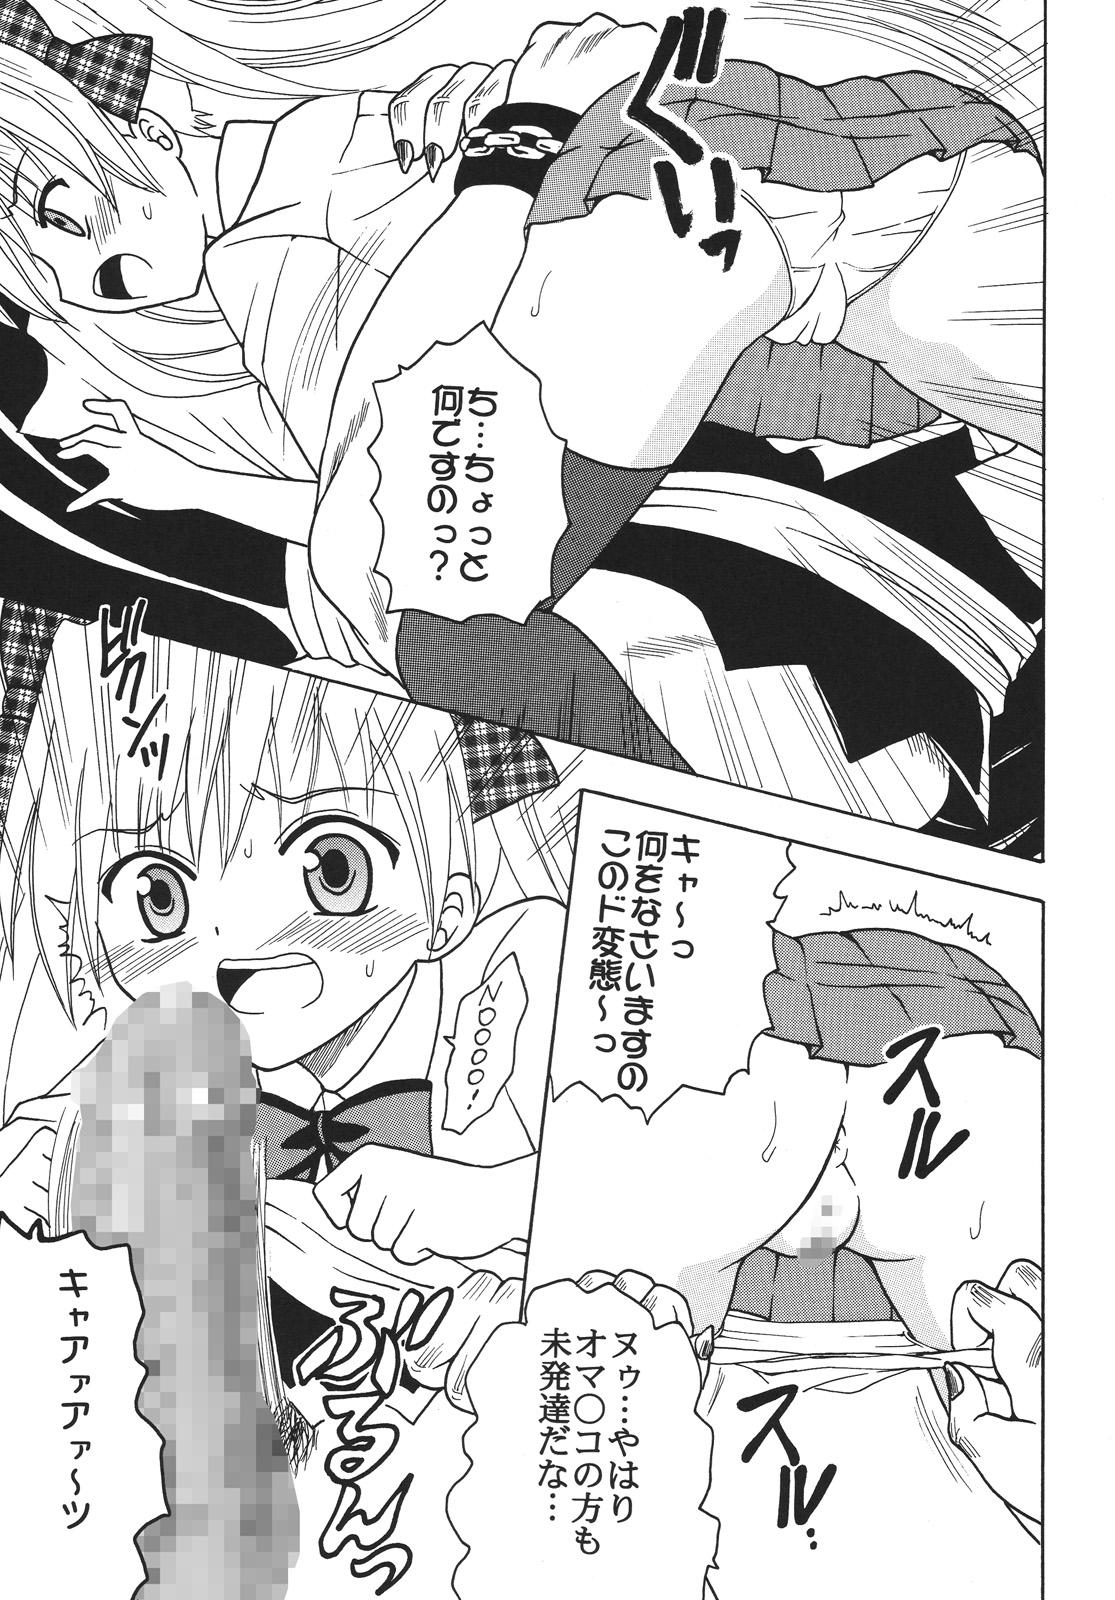 Toy Nakadashi Maid no Hinkaku 3 - Kamen no maid guy Shot - Page 6